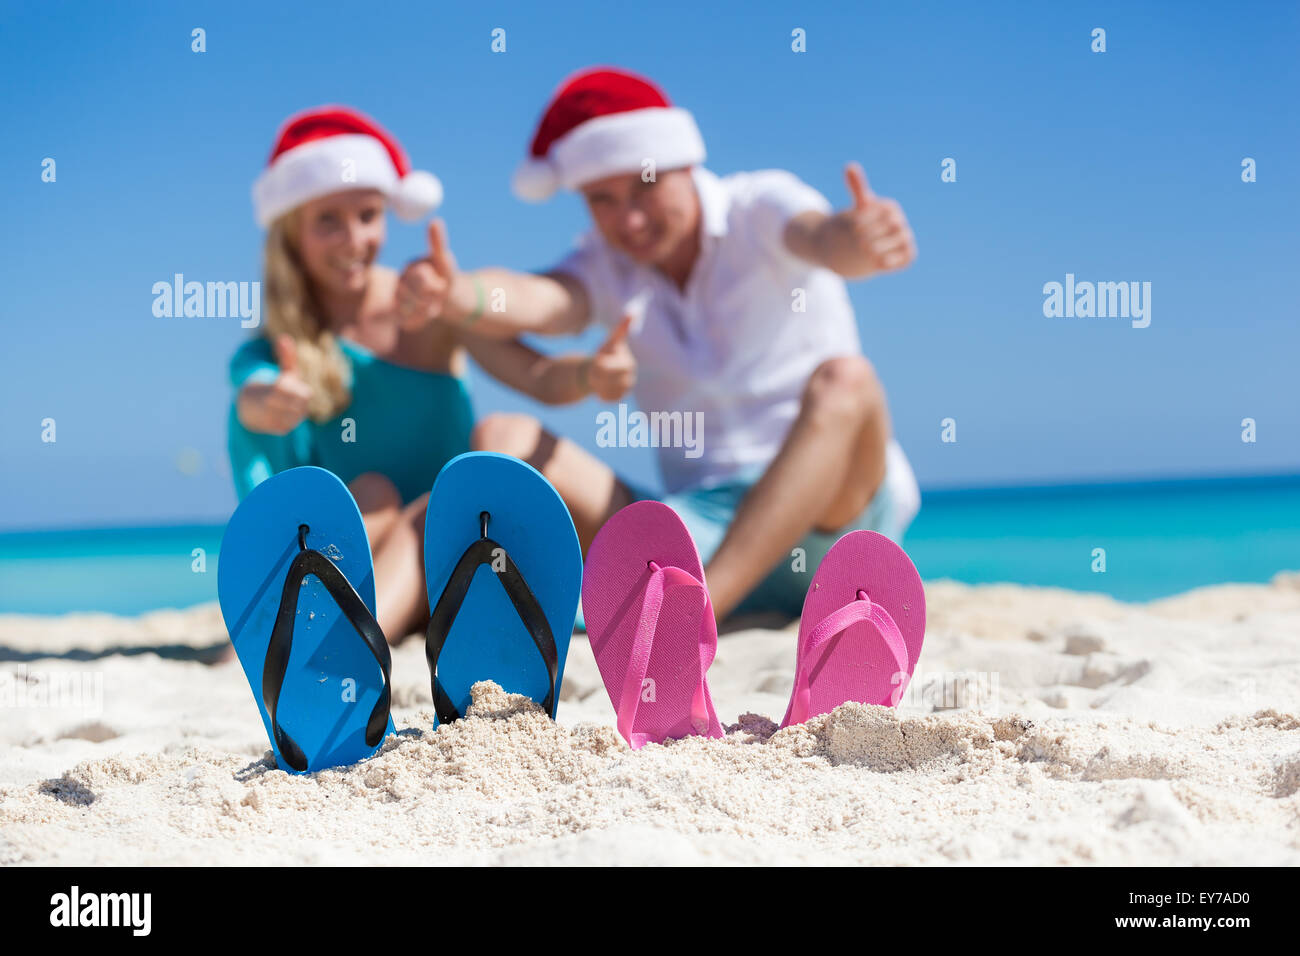 Karibik Weihnachten Urlaub am sandigen Strand. Zwei paar Flip flops stehen in einem Sand auf Hintergrund mit emotionalen Paar. Stockfoto